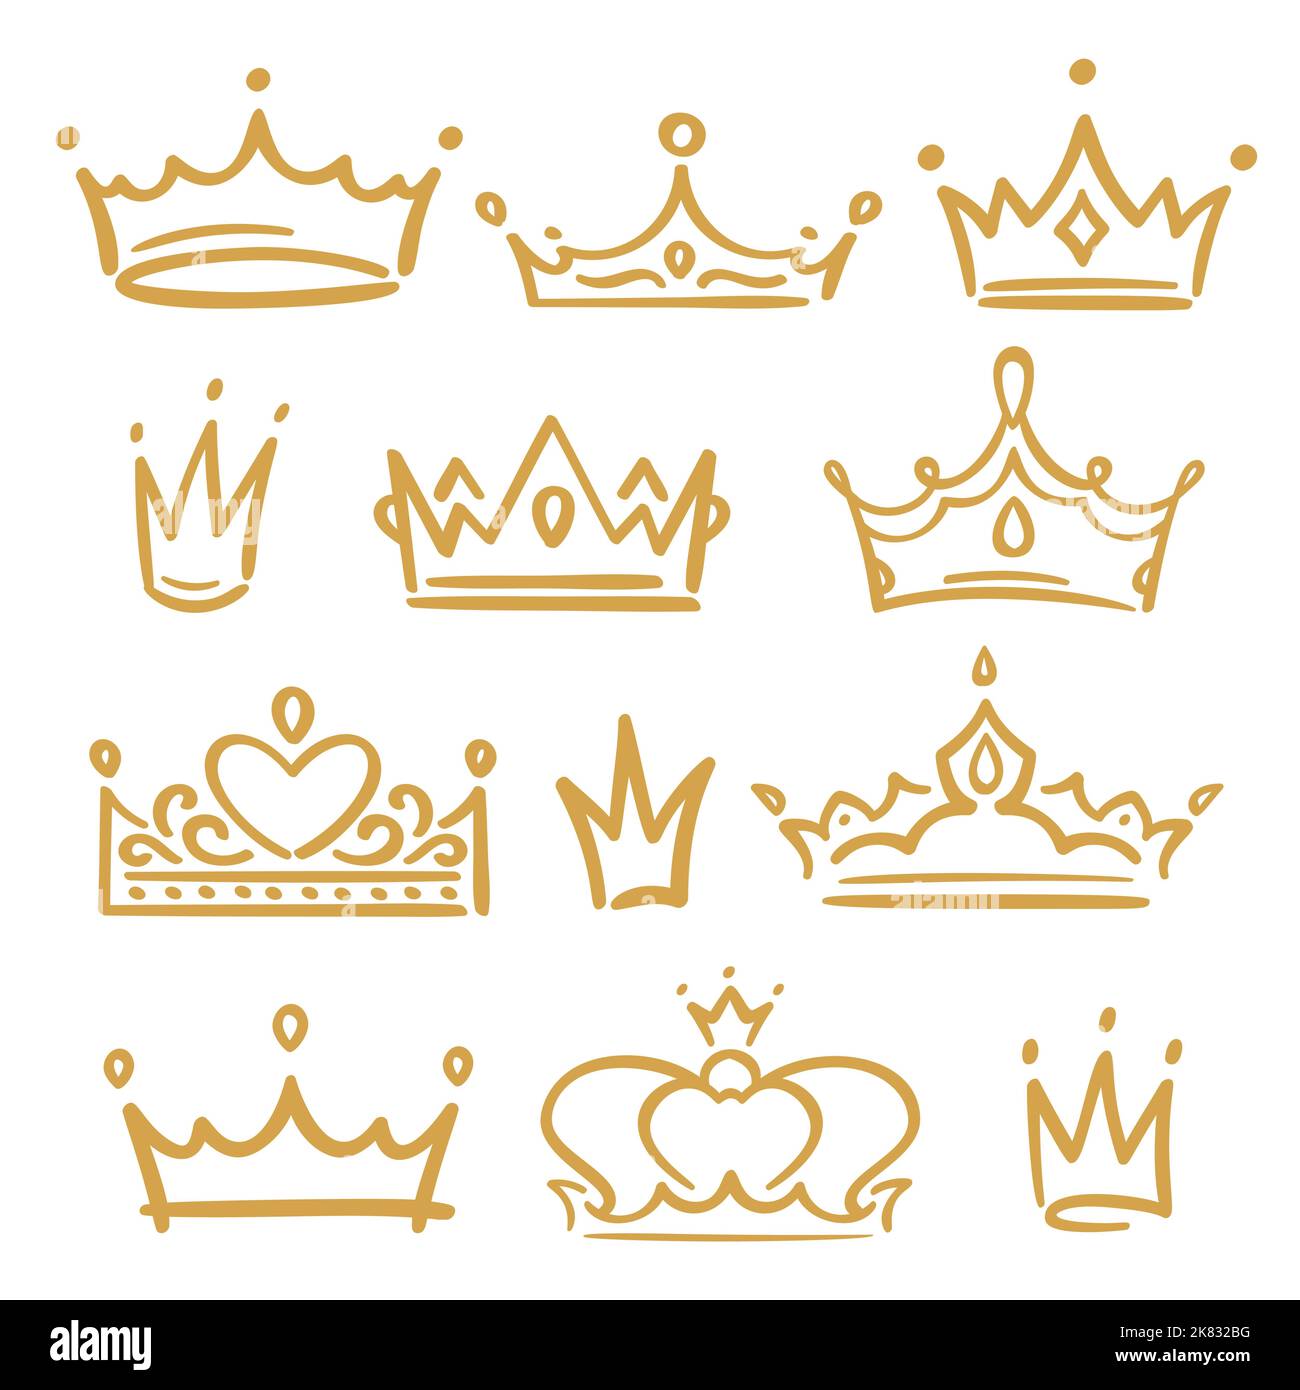 Goldene Skizzenkronen. Verschiedene königliche Accessoires für Königin und König, Prinz und Prinzessin. Handgezeichnete Diademe Stock Vektor